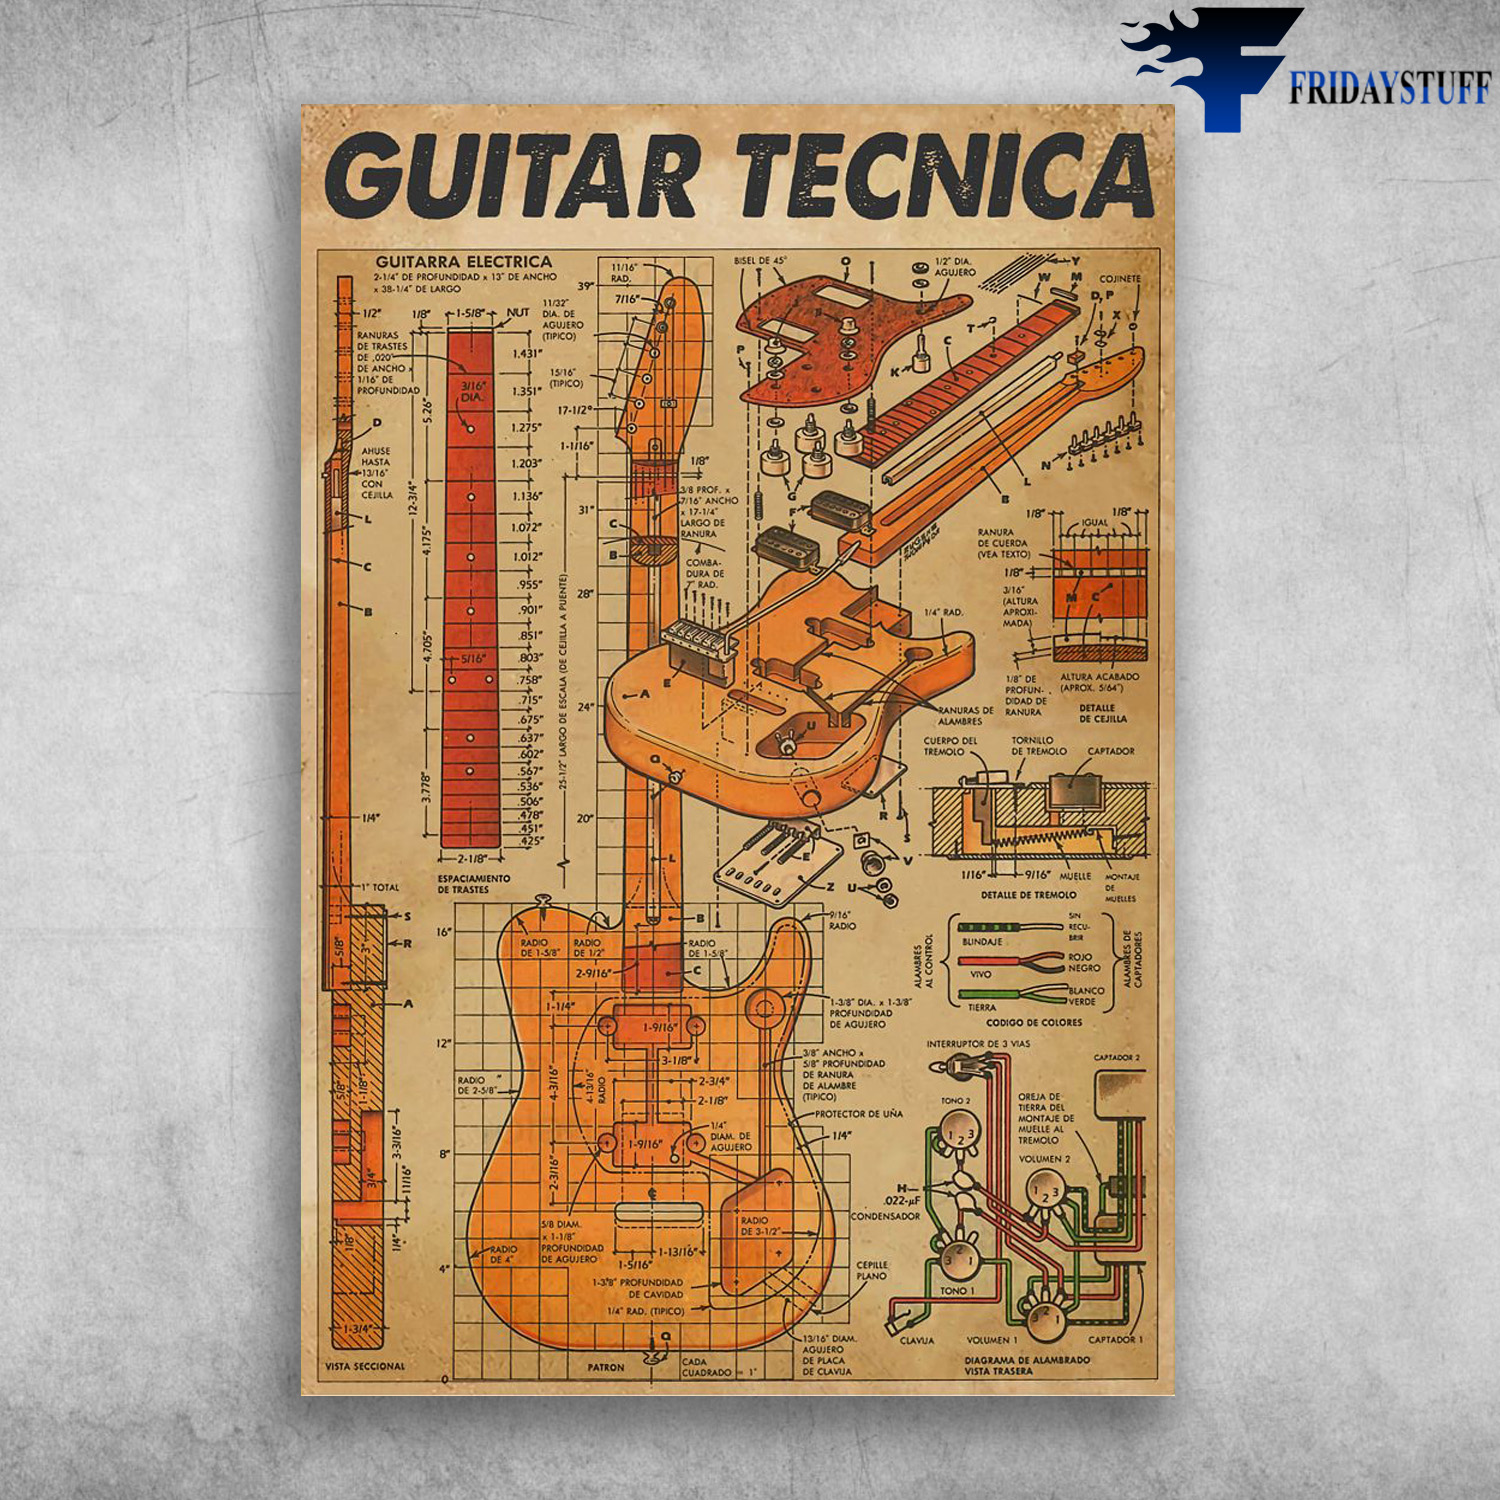 Guitar Tecnica - Guitarra Electrica, Electric Guitar Knowledge